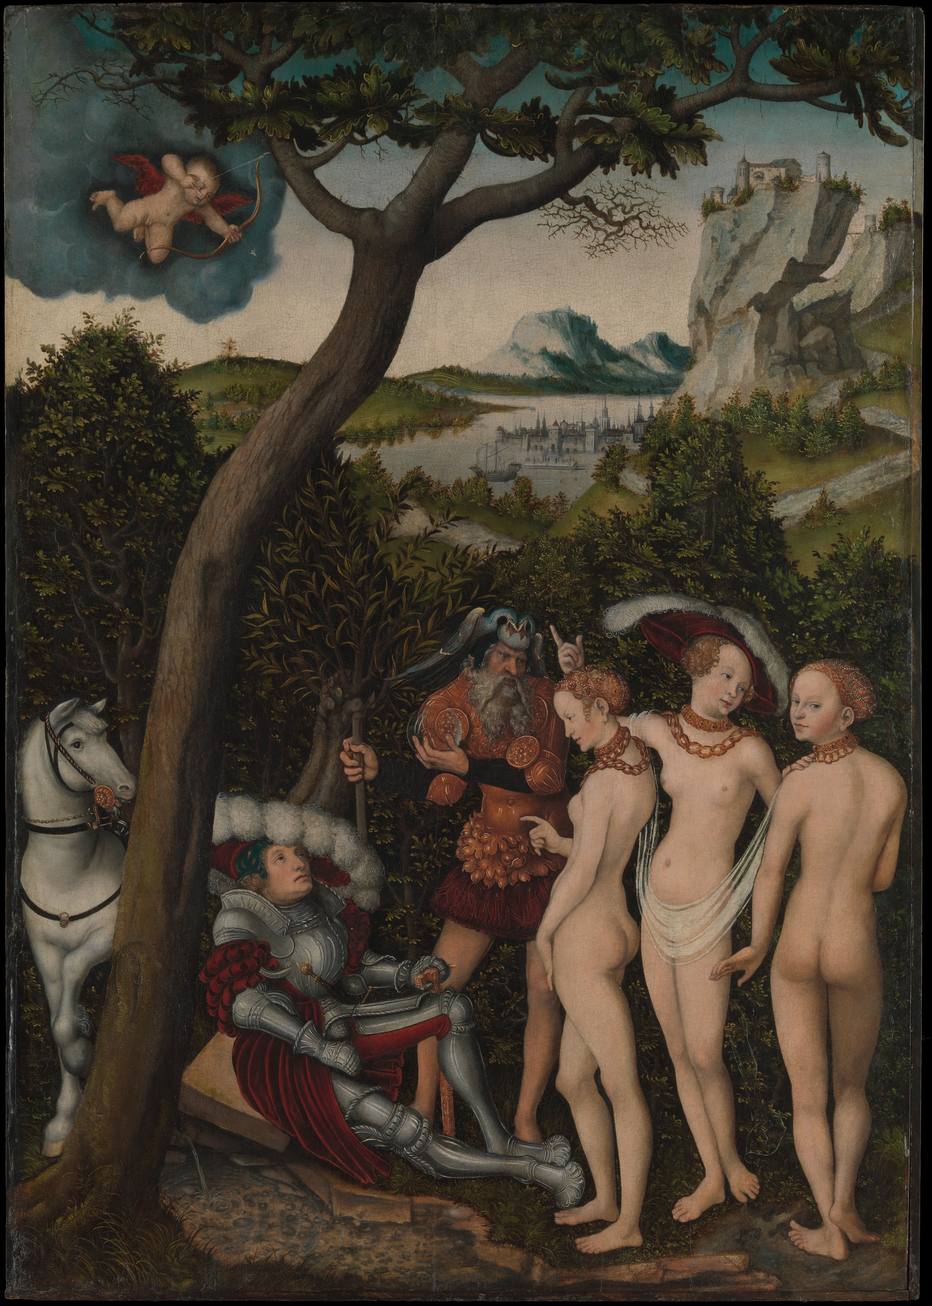 Páris escolhe a deus mais bela, em tela do alemão Lucas Cranach: conflito criado por Éris, a discórdia